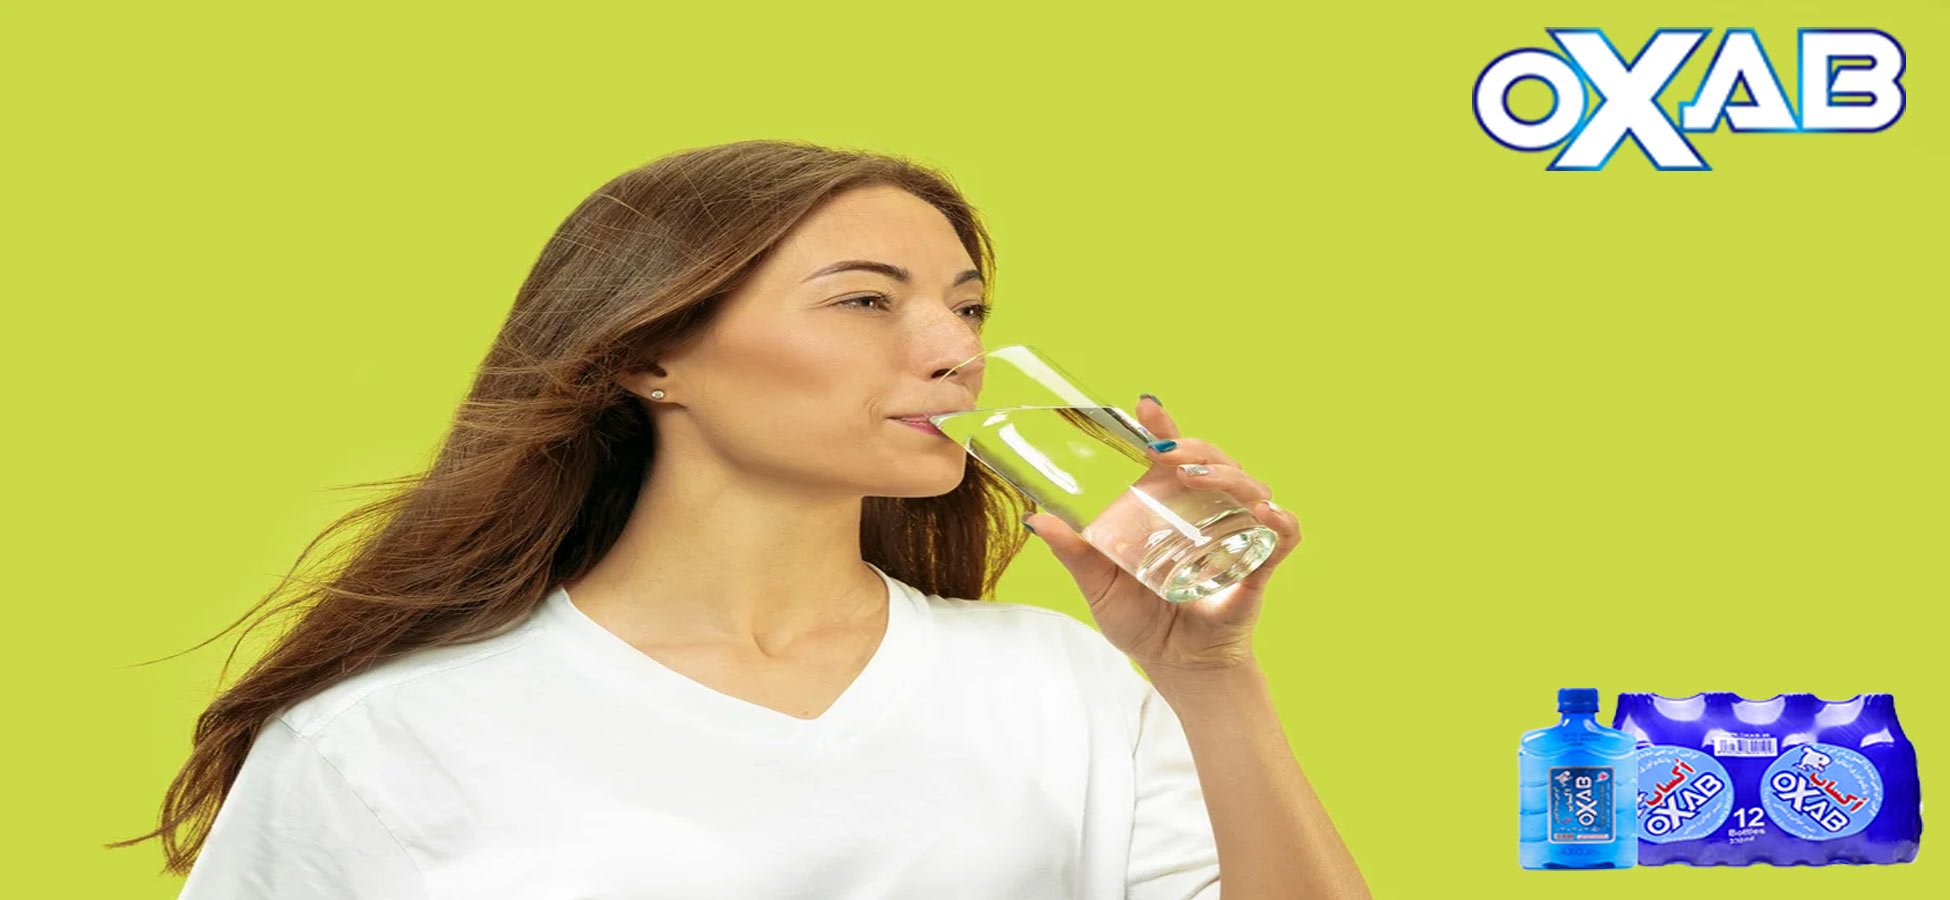 مصرف زیاد آب برای بدن مفید است یا مضر ؟